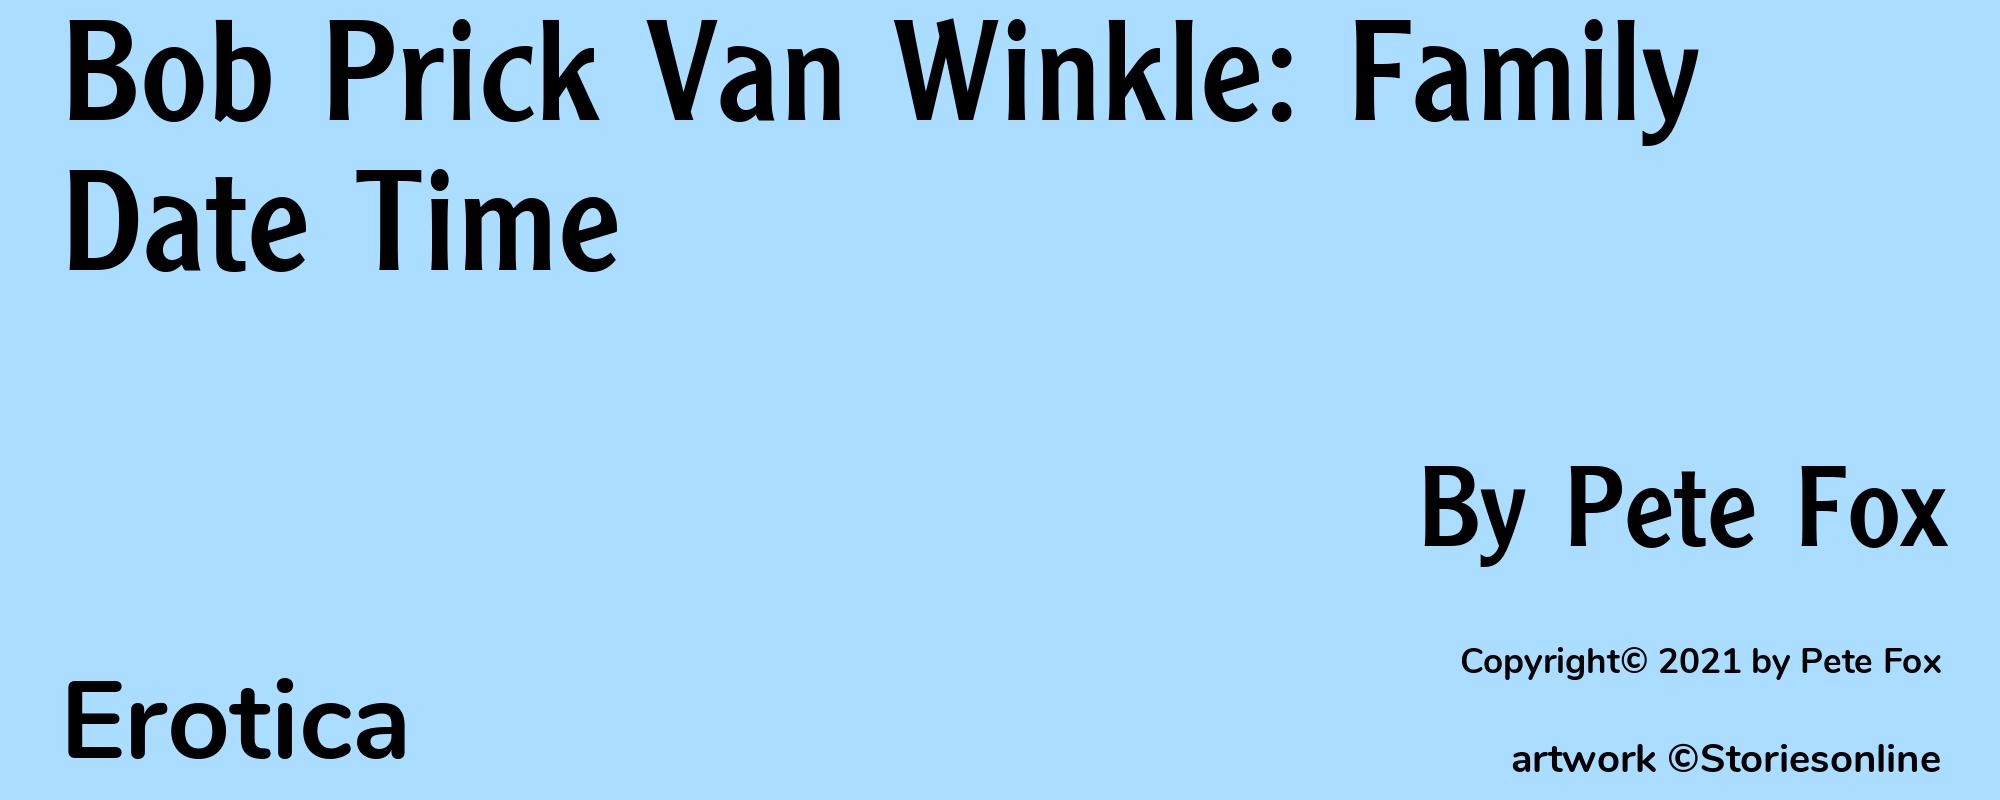 Bob Prick Van Winkle: Family Date Time - Cover